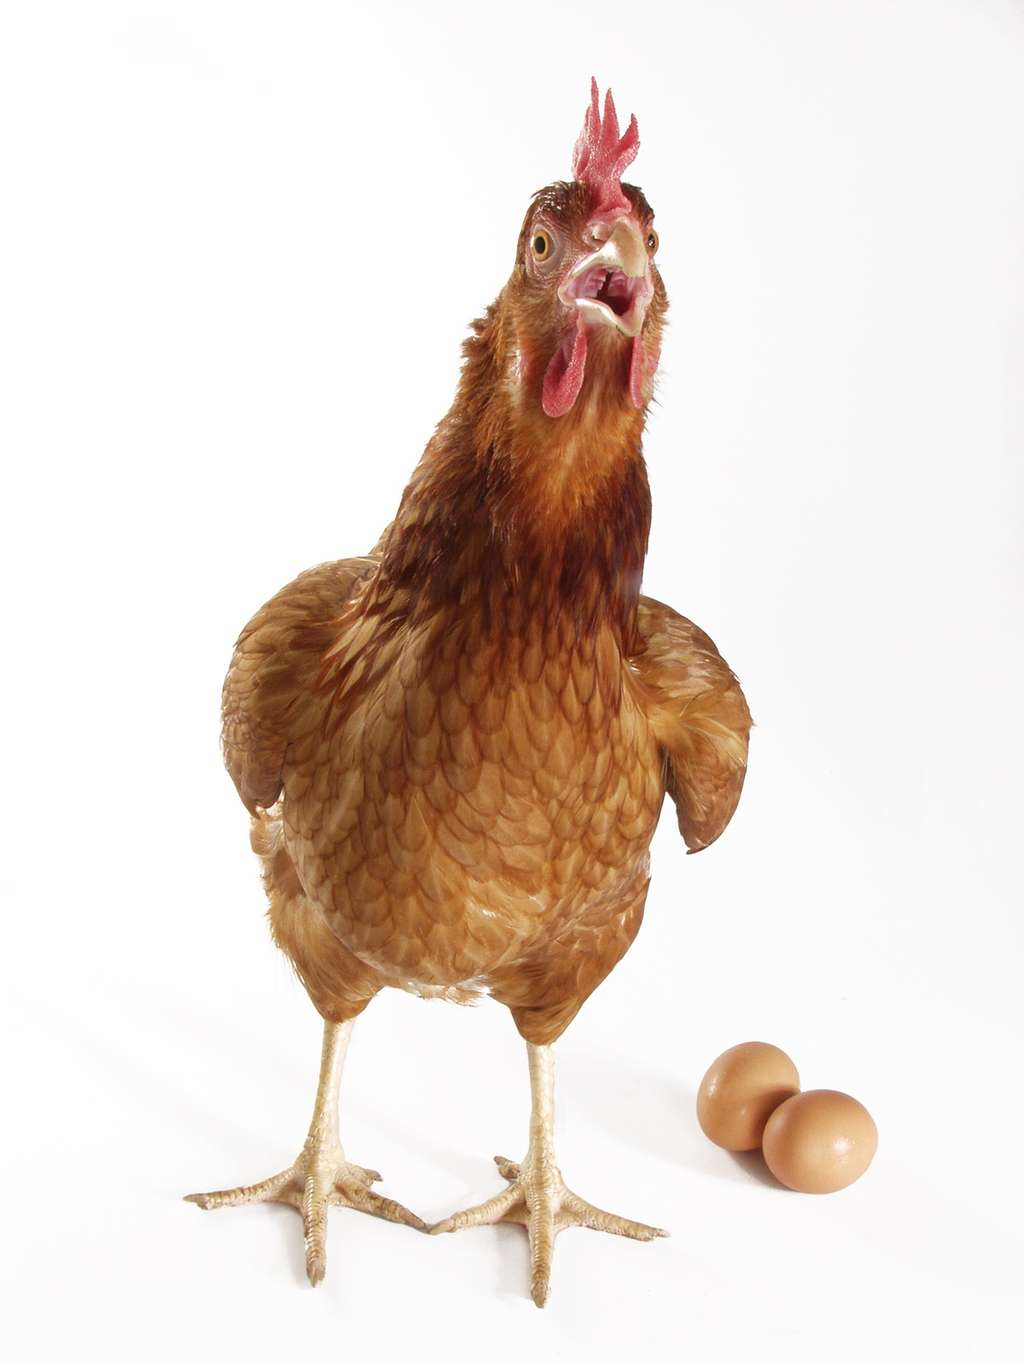 Les poules communiquent entre elles et peuvent sonner l’alerte en cas de danger. © gosphotodesign, Fotolia